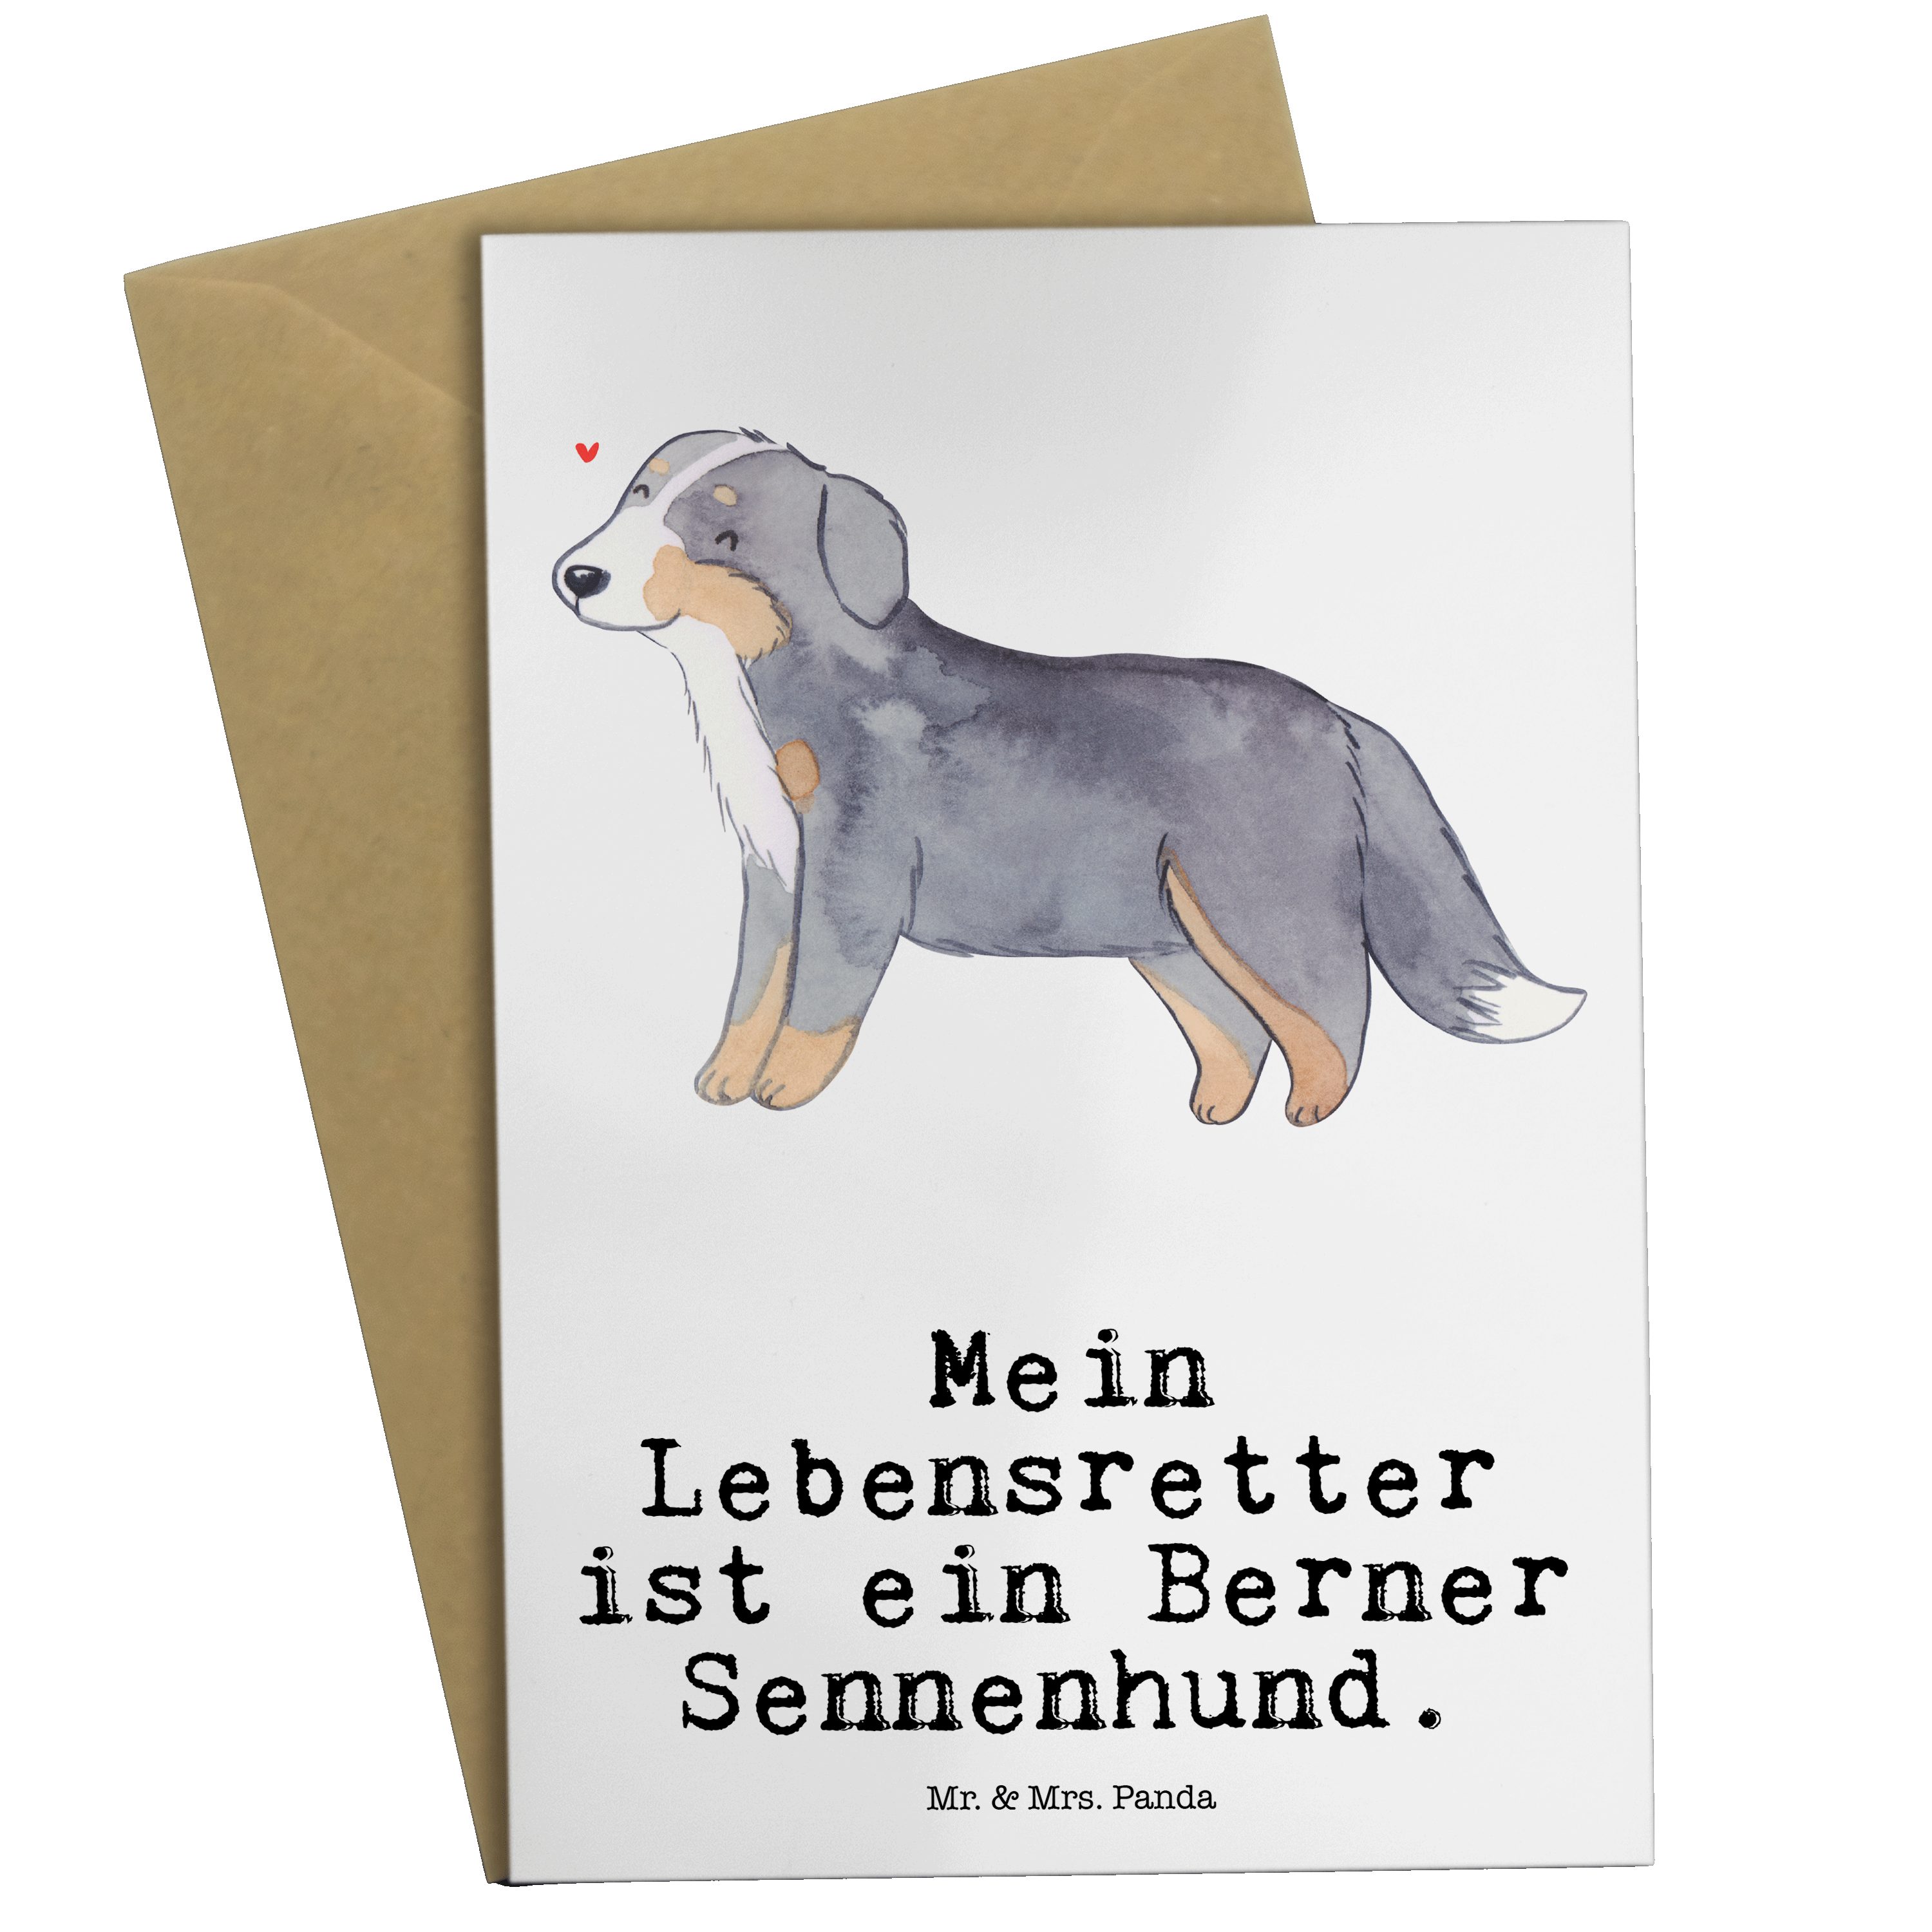 Mr. & Mrs. Panda Grußkarte Berner Sennenhund Lebensretter - Weiß - Geschenk, Rassehund, Einladun